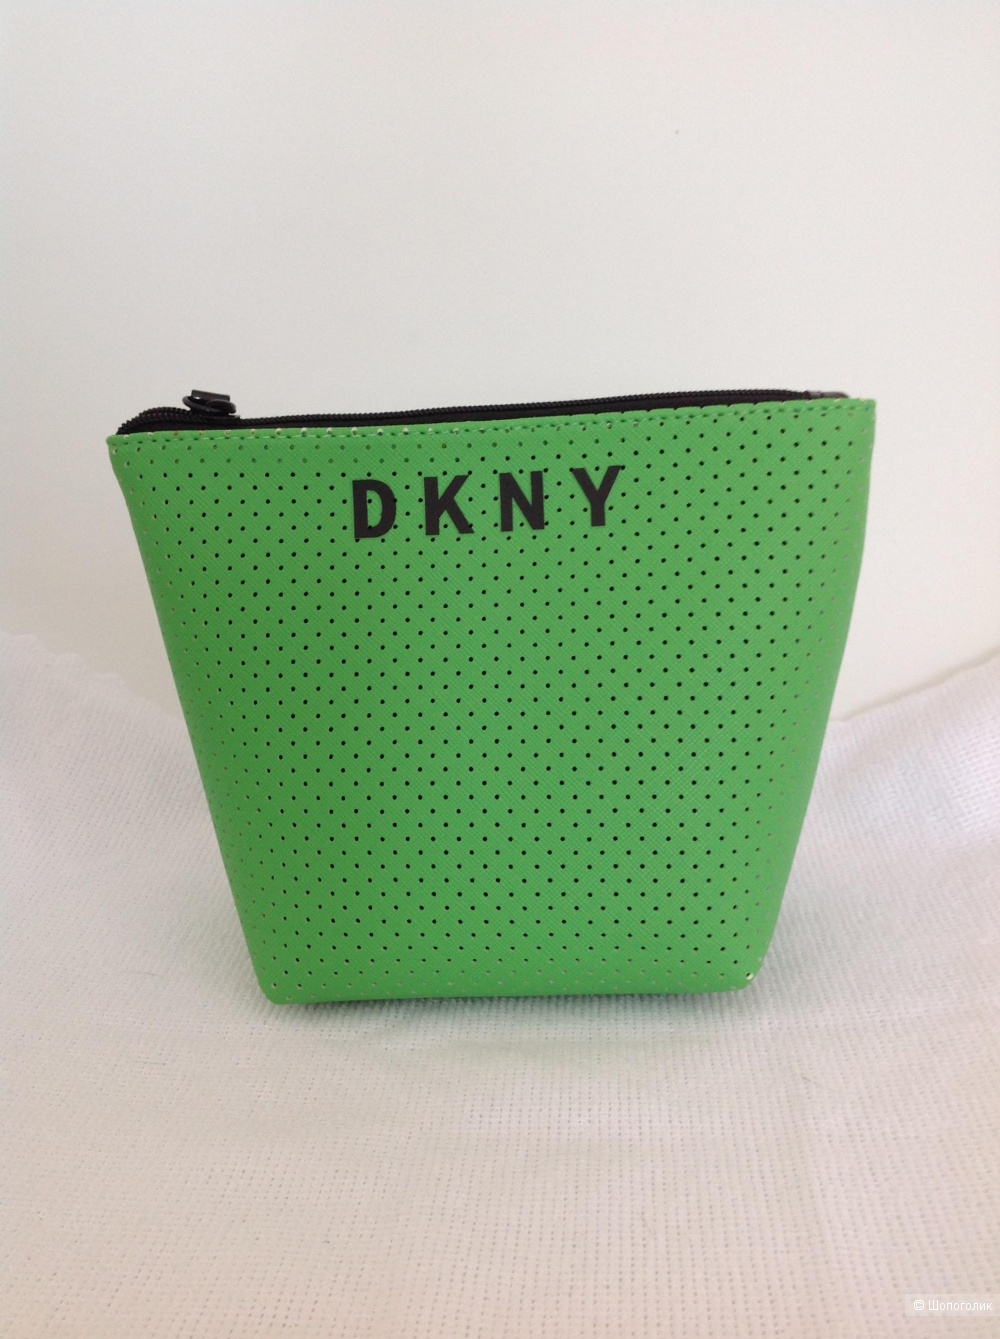 Косметичка DKNY